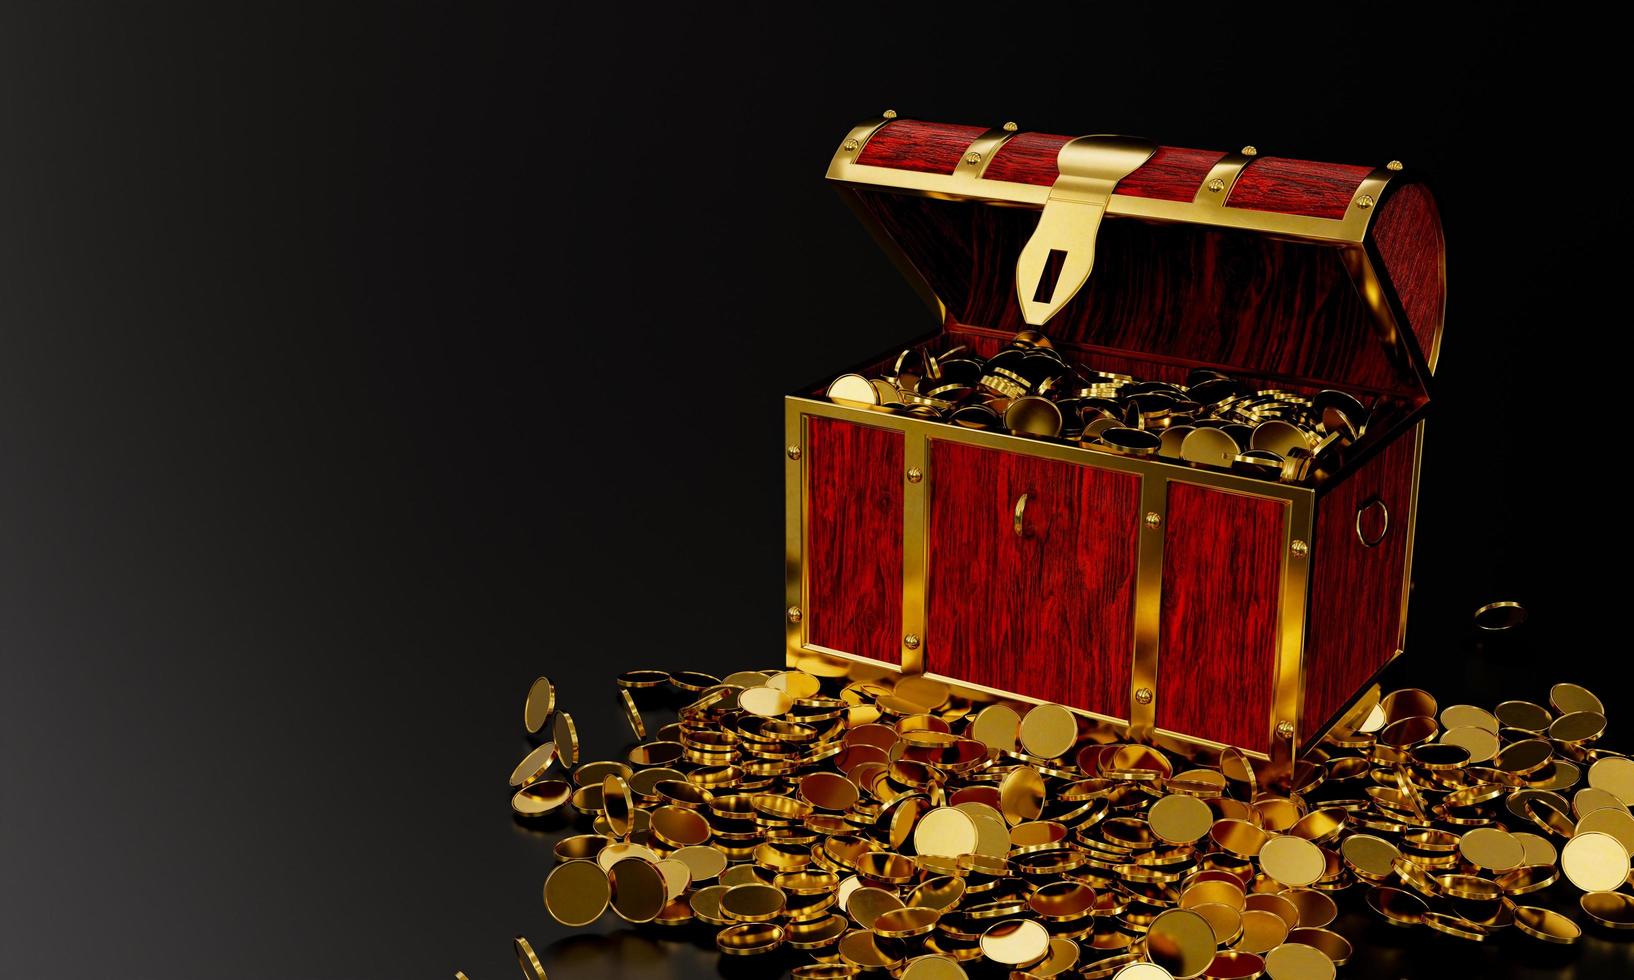 zahlreiche Goldmünzen flossen aus der Schatztruhe. Holzschatzkiste im alten Stil, fest zusammengebaut mit rostigen Metallstreifen. 3D-Rendering foto